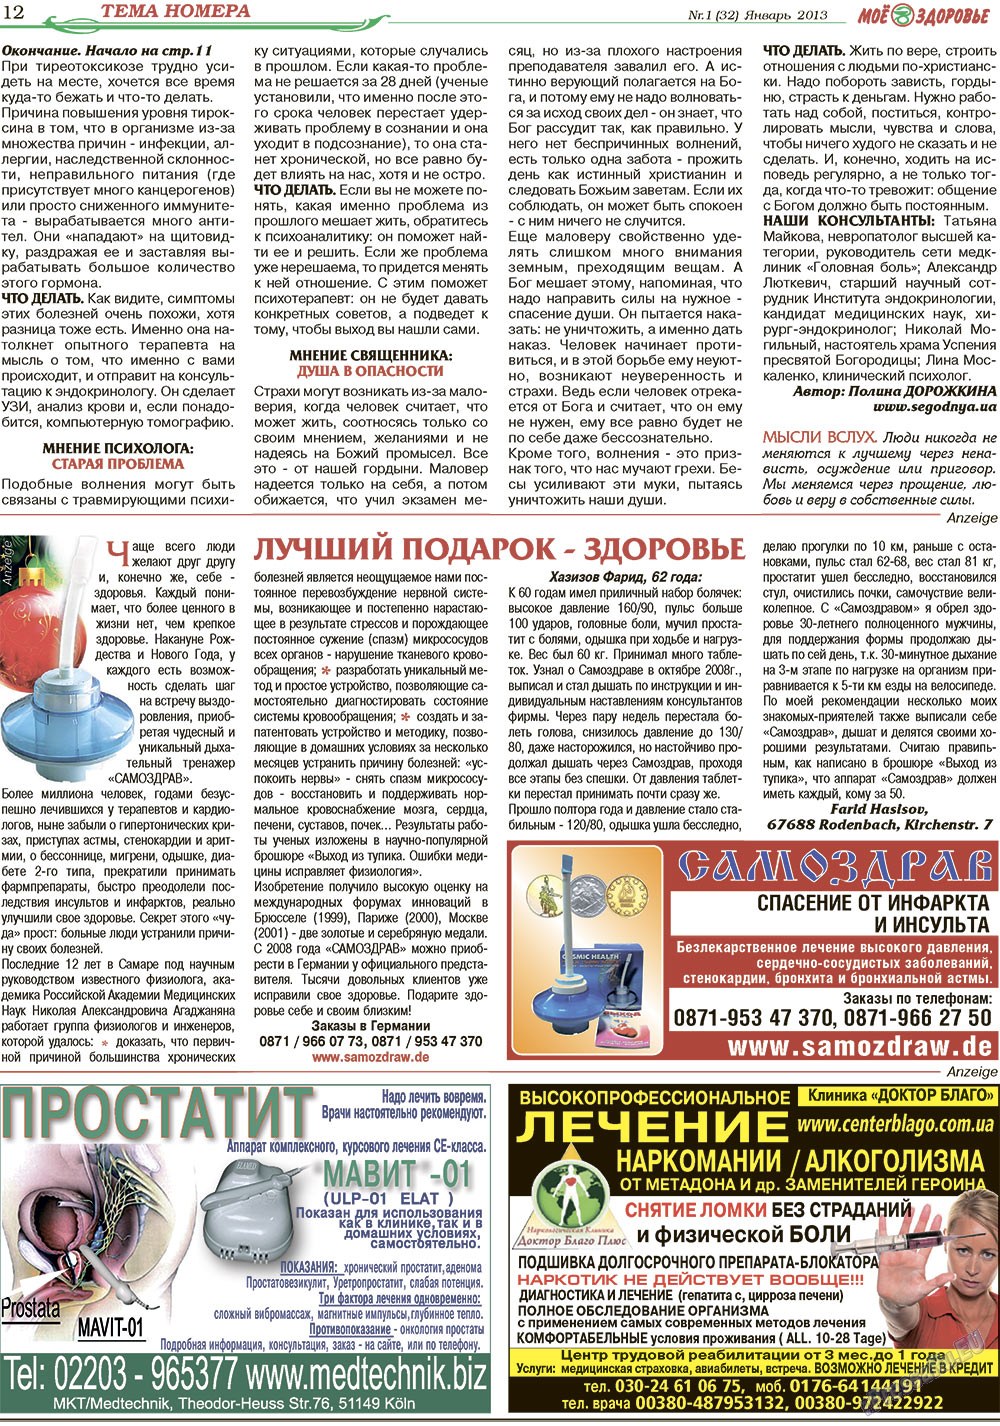 Кругозор, газета. 2013 №1 стр.12